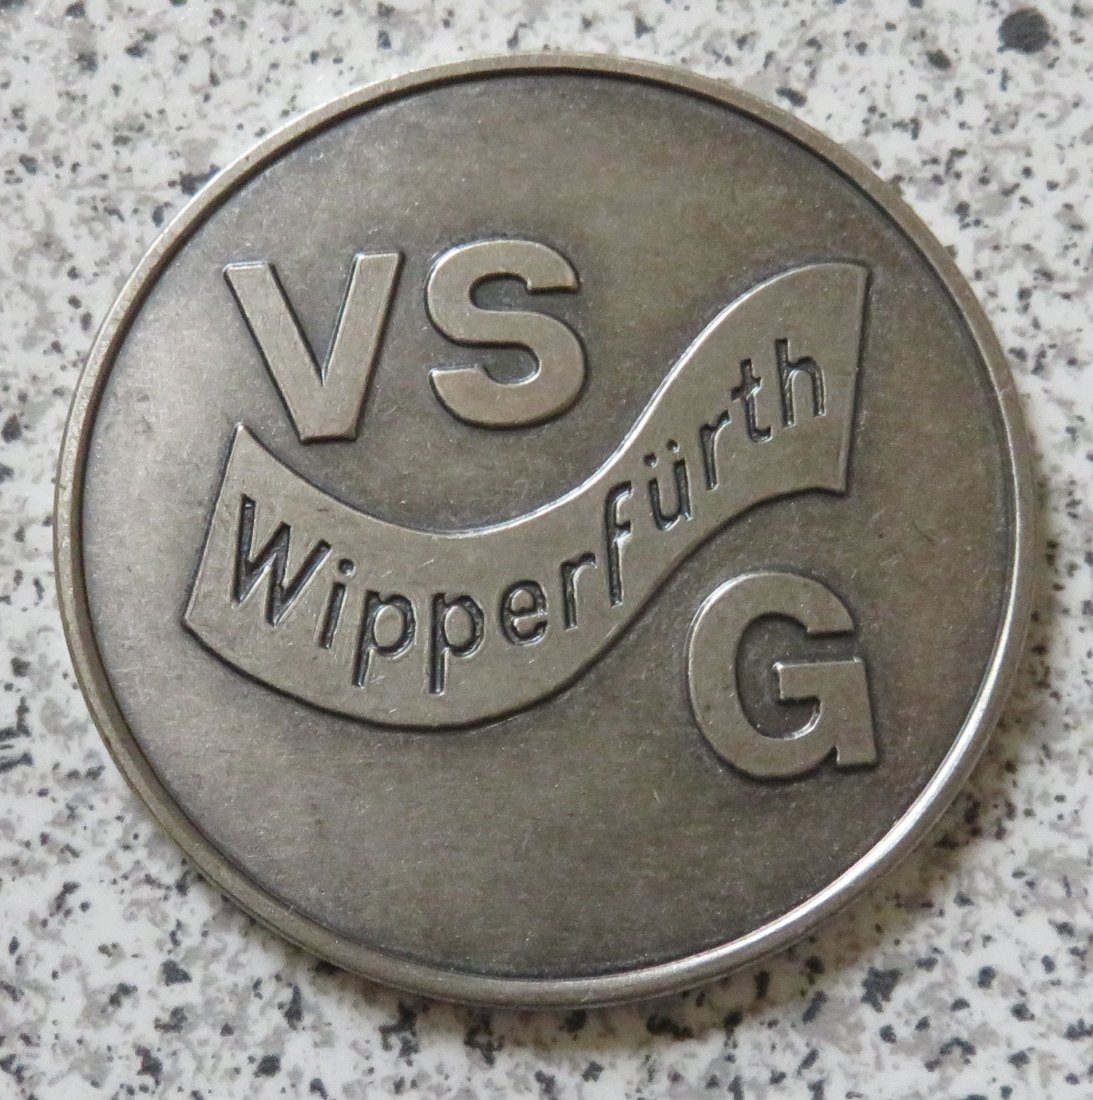  VSG Wipperfürth / Seit 30 Jahren Sport, Spiel und Spass, 1959 - 1989   